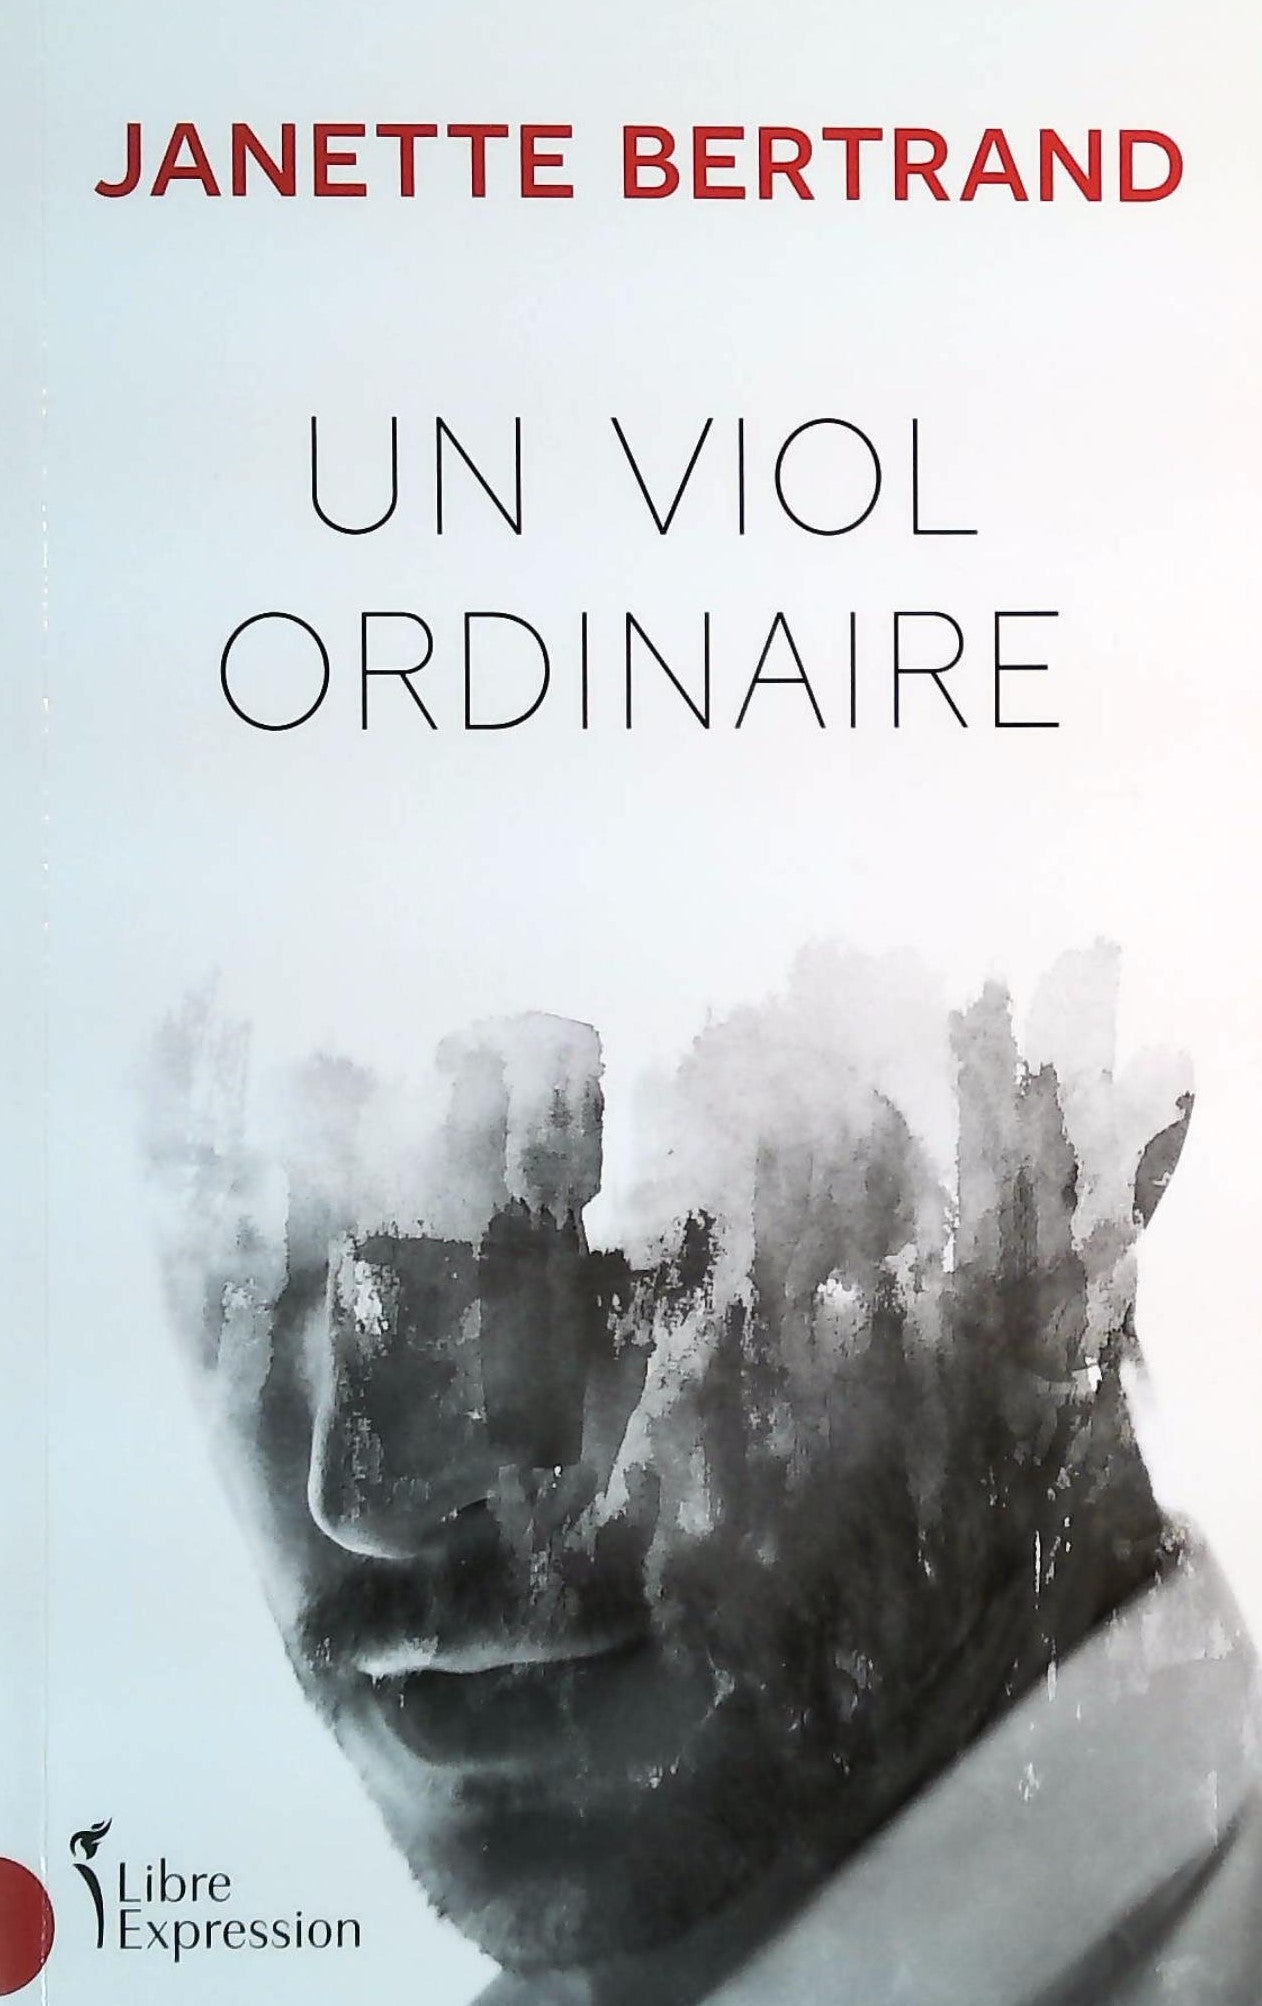 Livre ISBN 2764814194 Un viol ordinaire (Janette Bertrand)